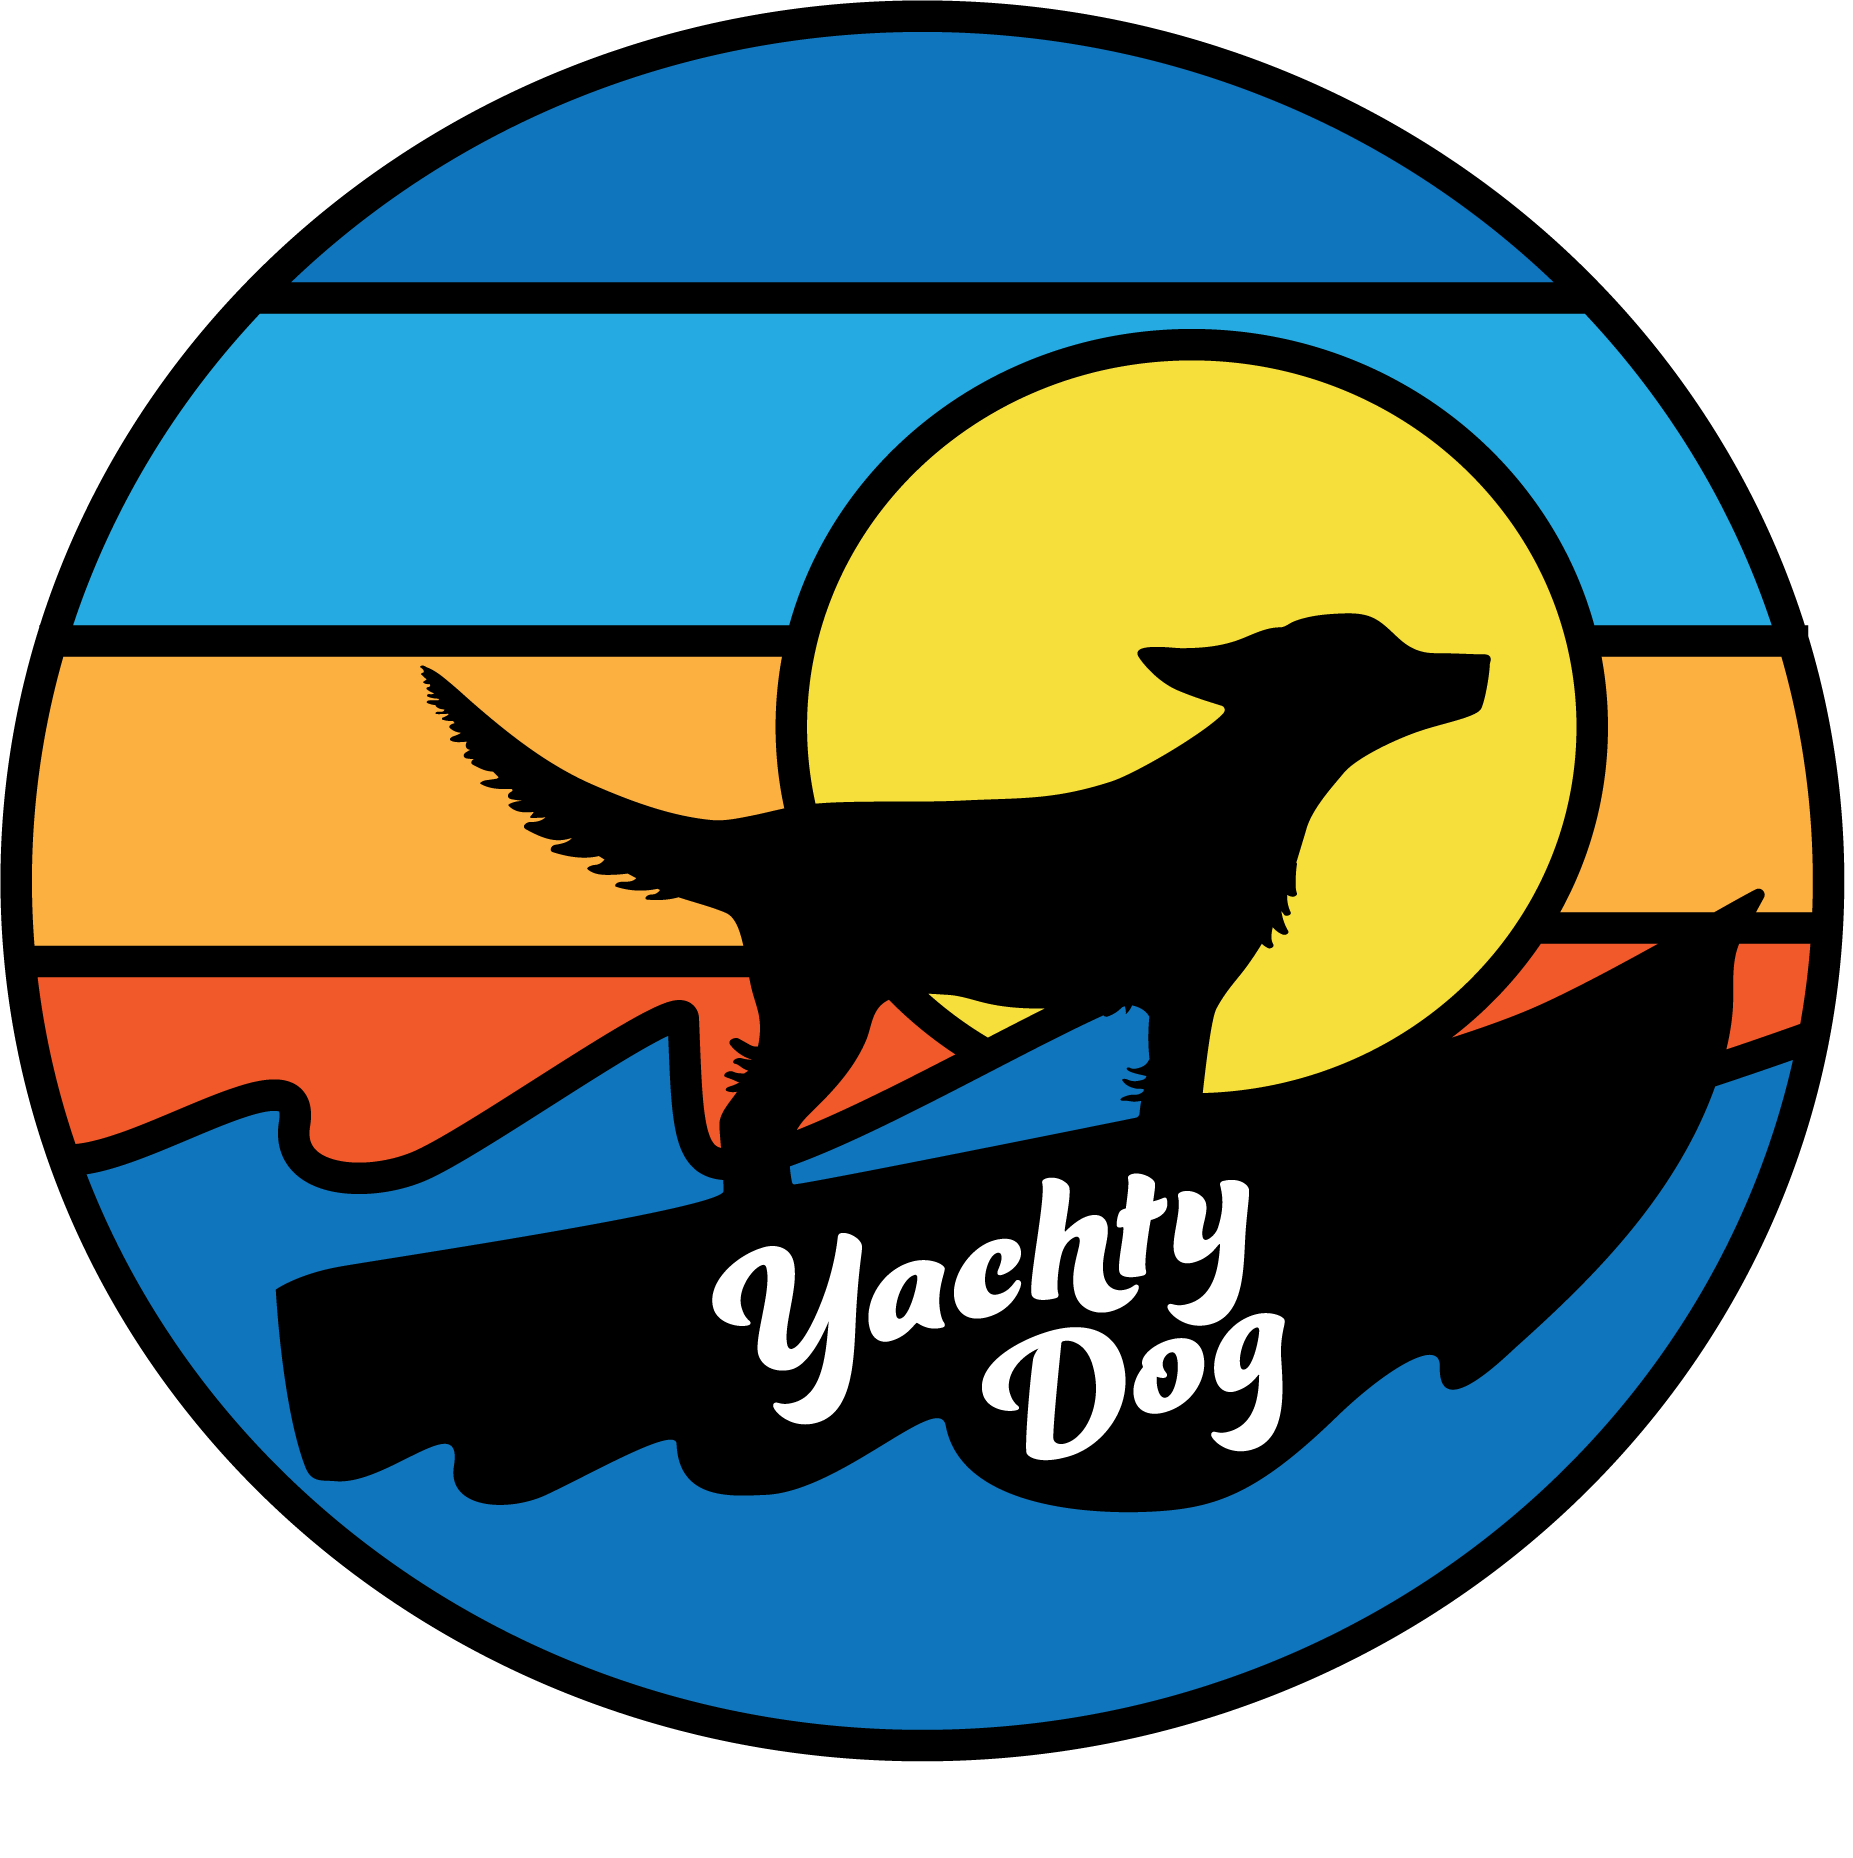 Yachty Dog